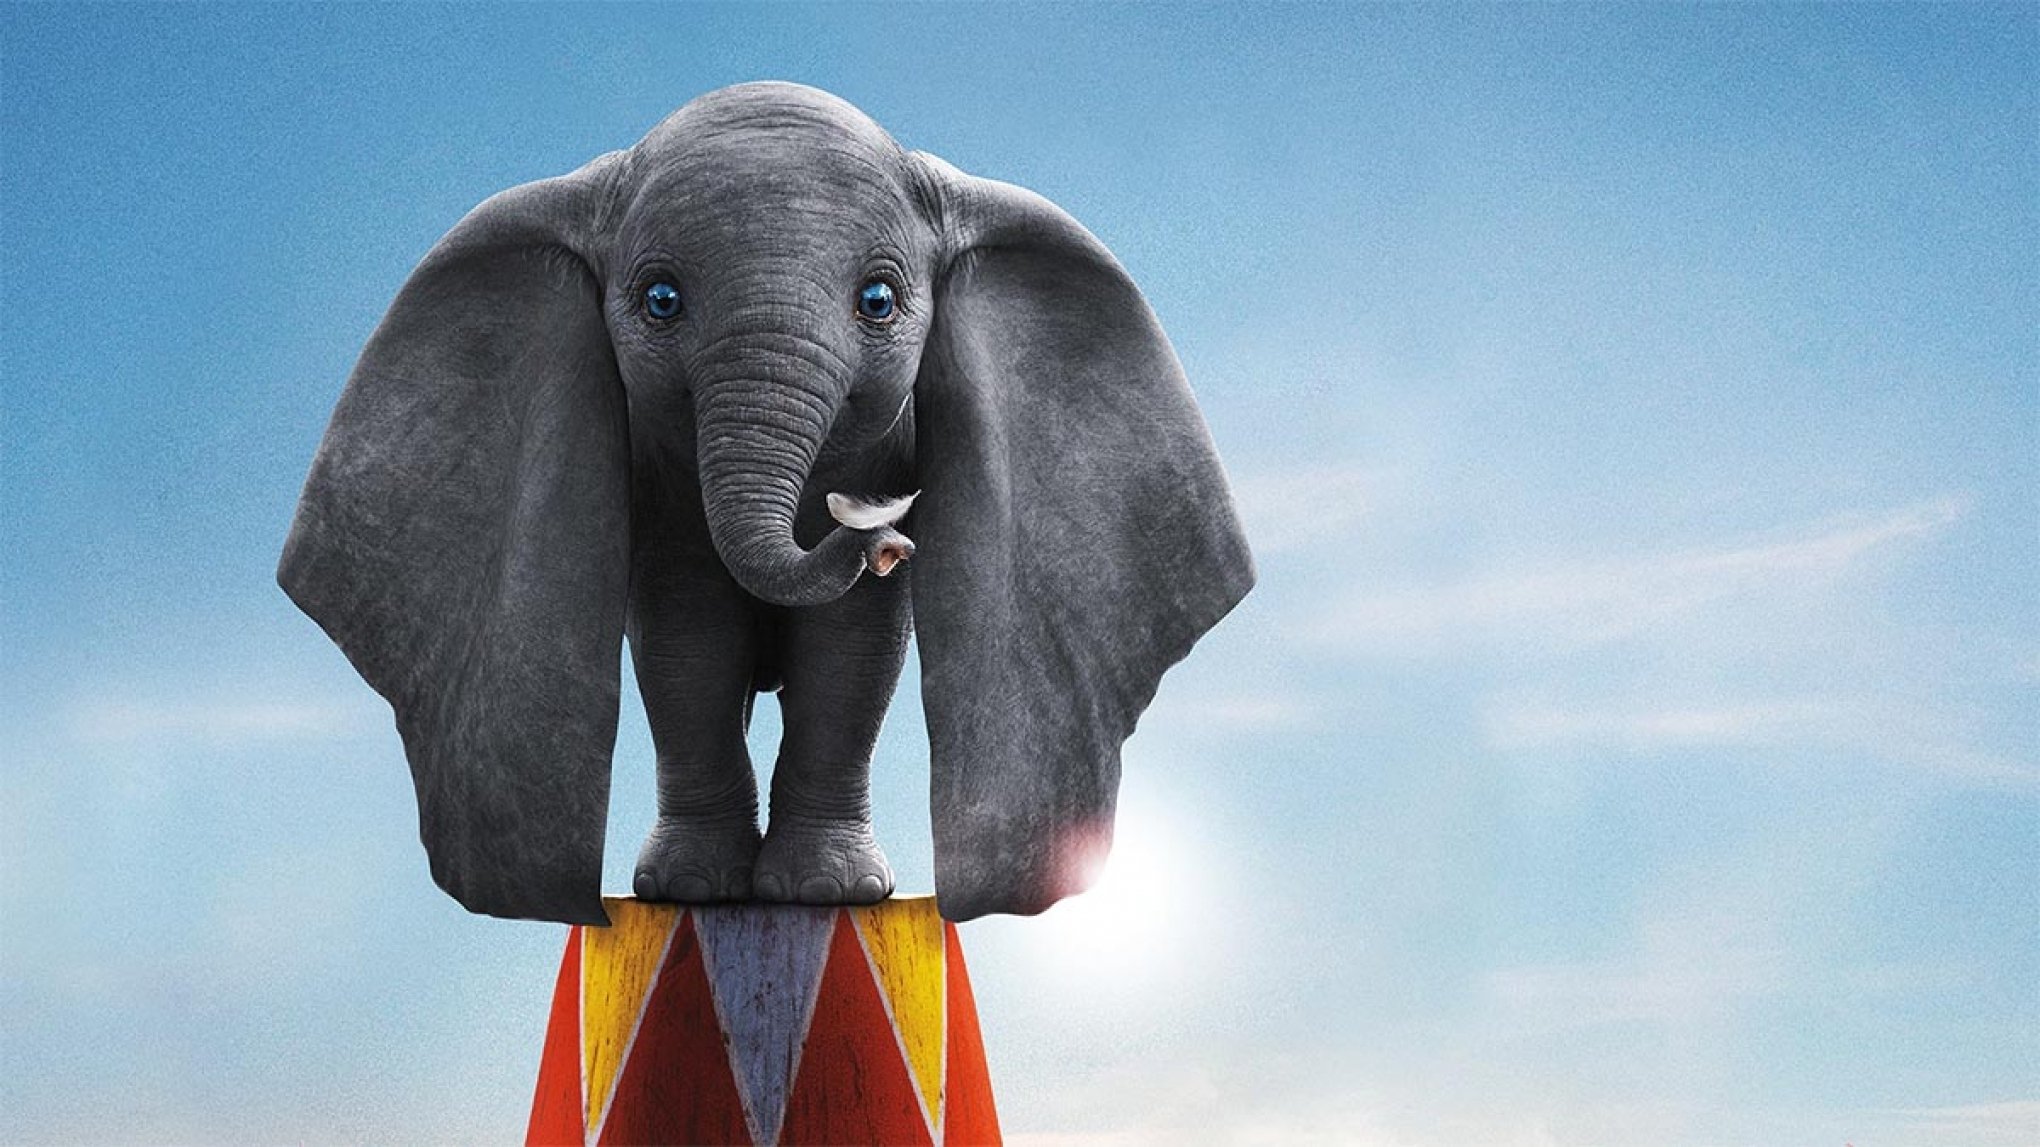 SESSÃO DA TARDE: TV Globo exibe o filme Dumbo nesta segunda-feira, 22 de abril